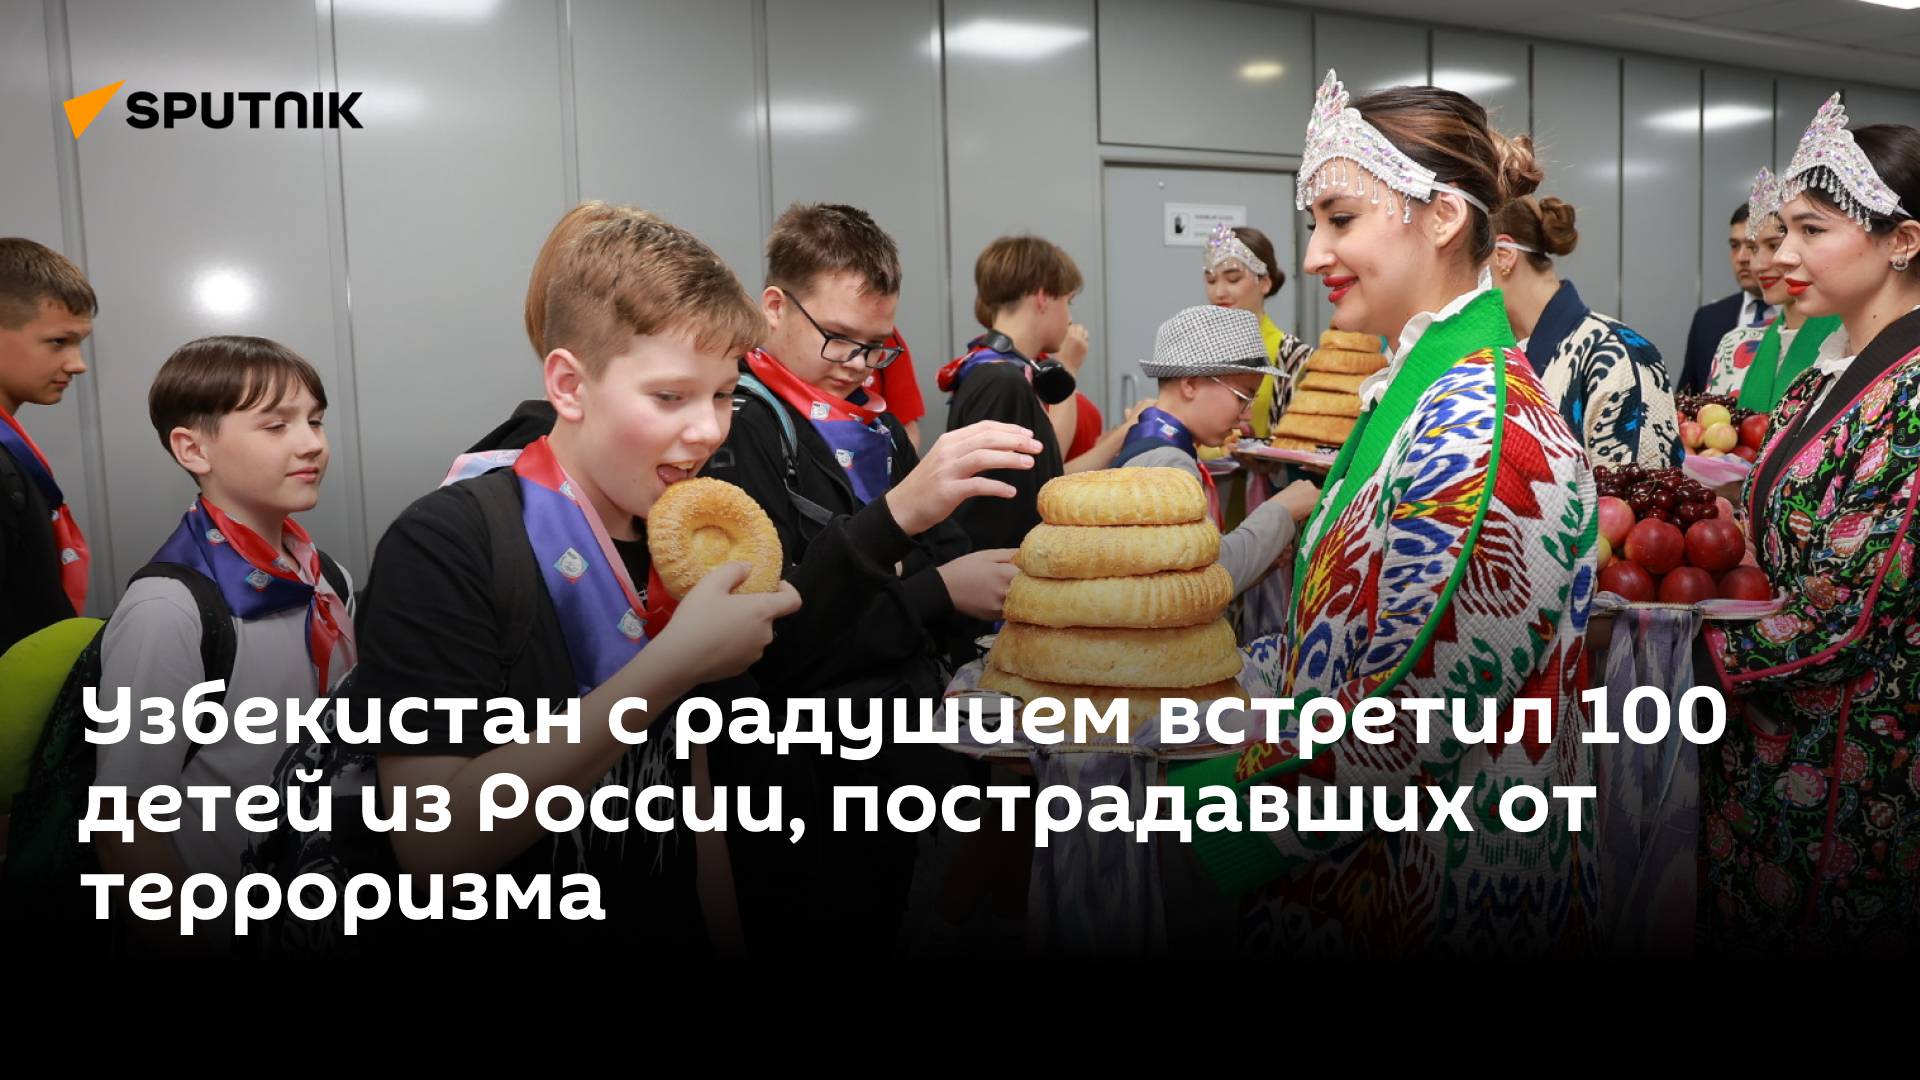 В атмосфере дружбы и добра: в Узбекистане отдыхают 100 детей из России, пострадавших от терроризма